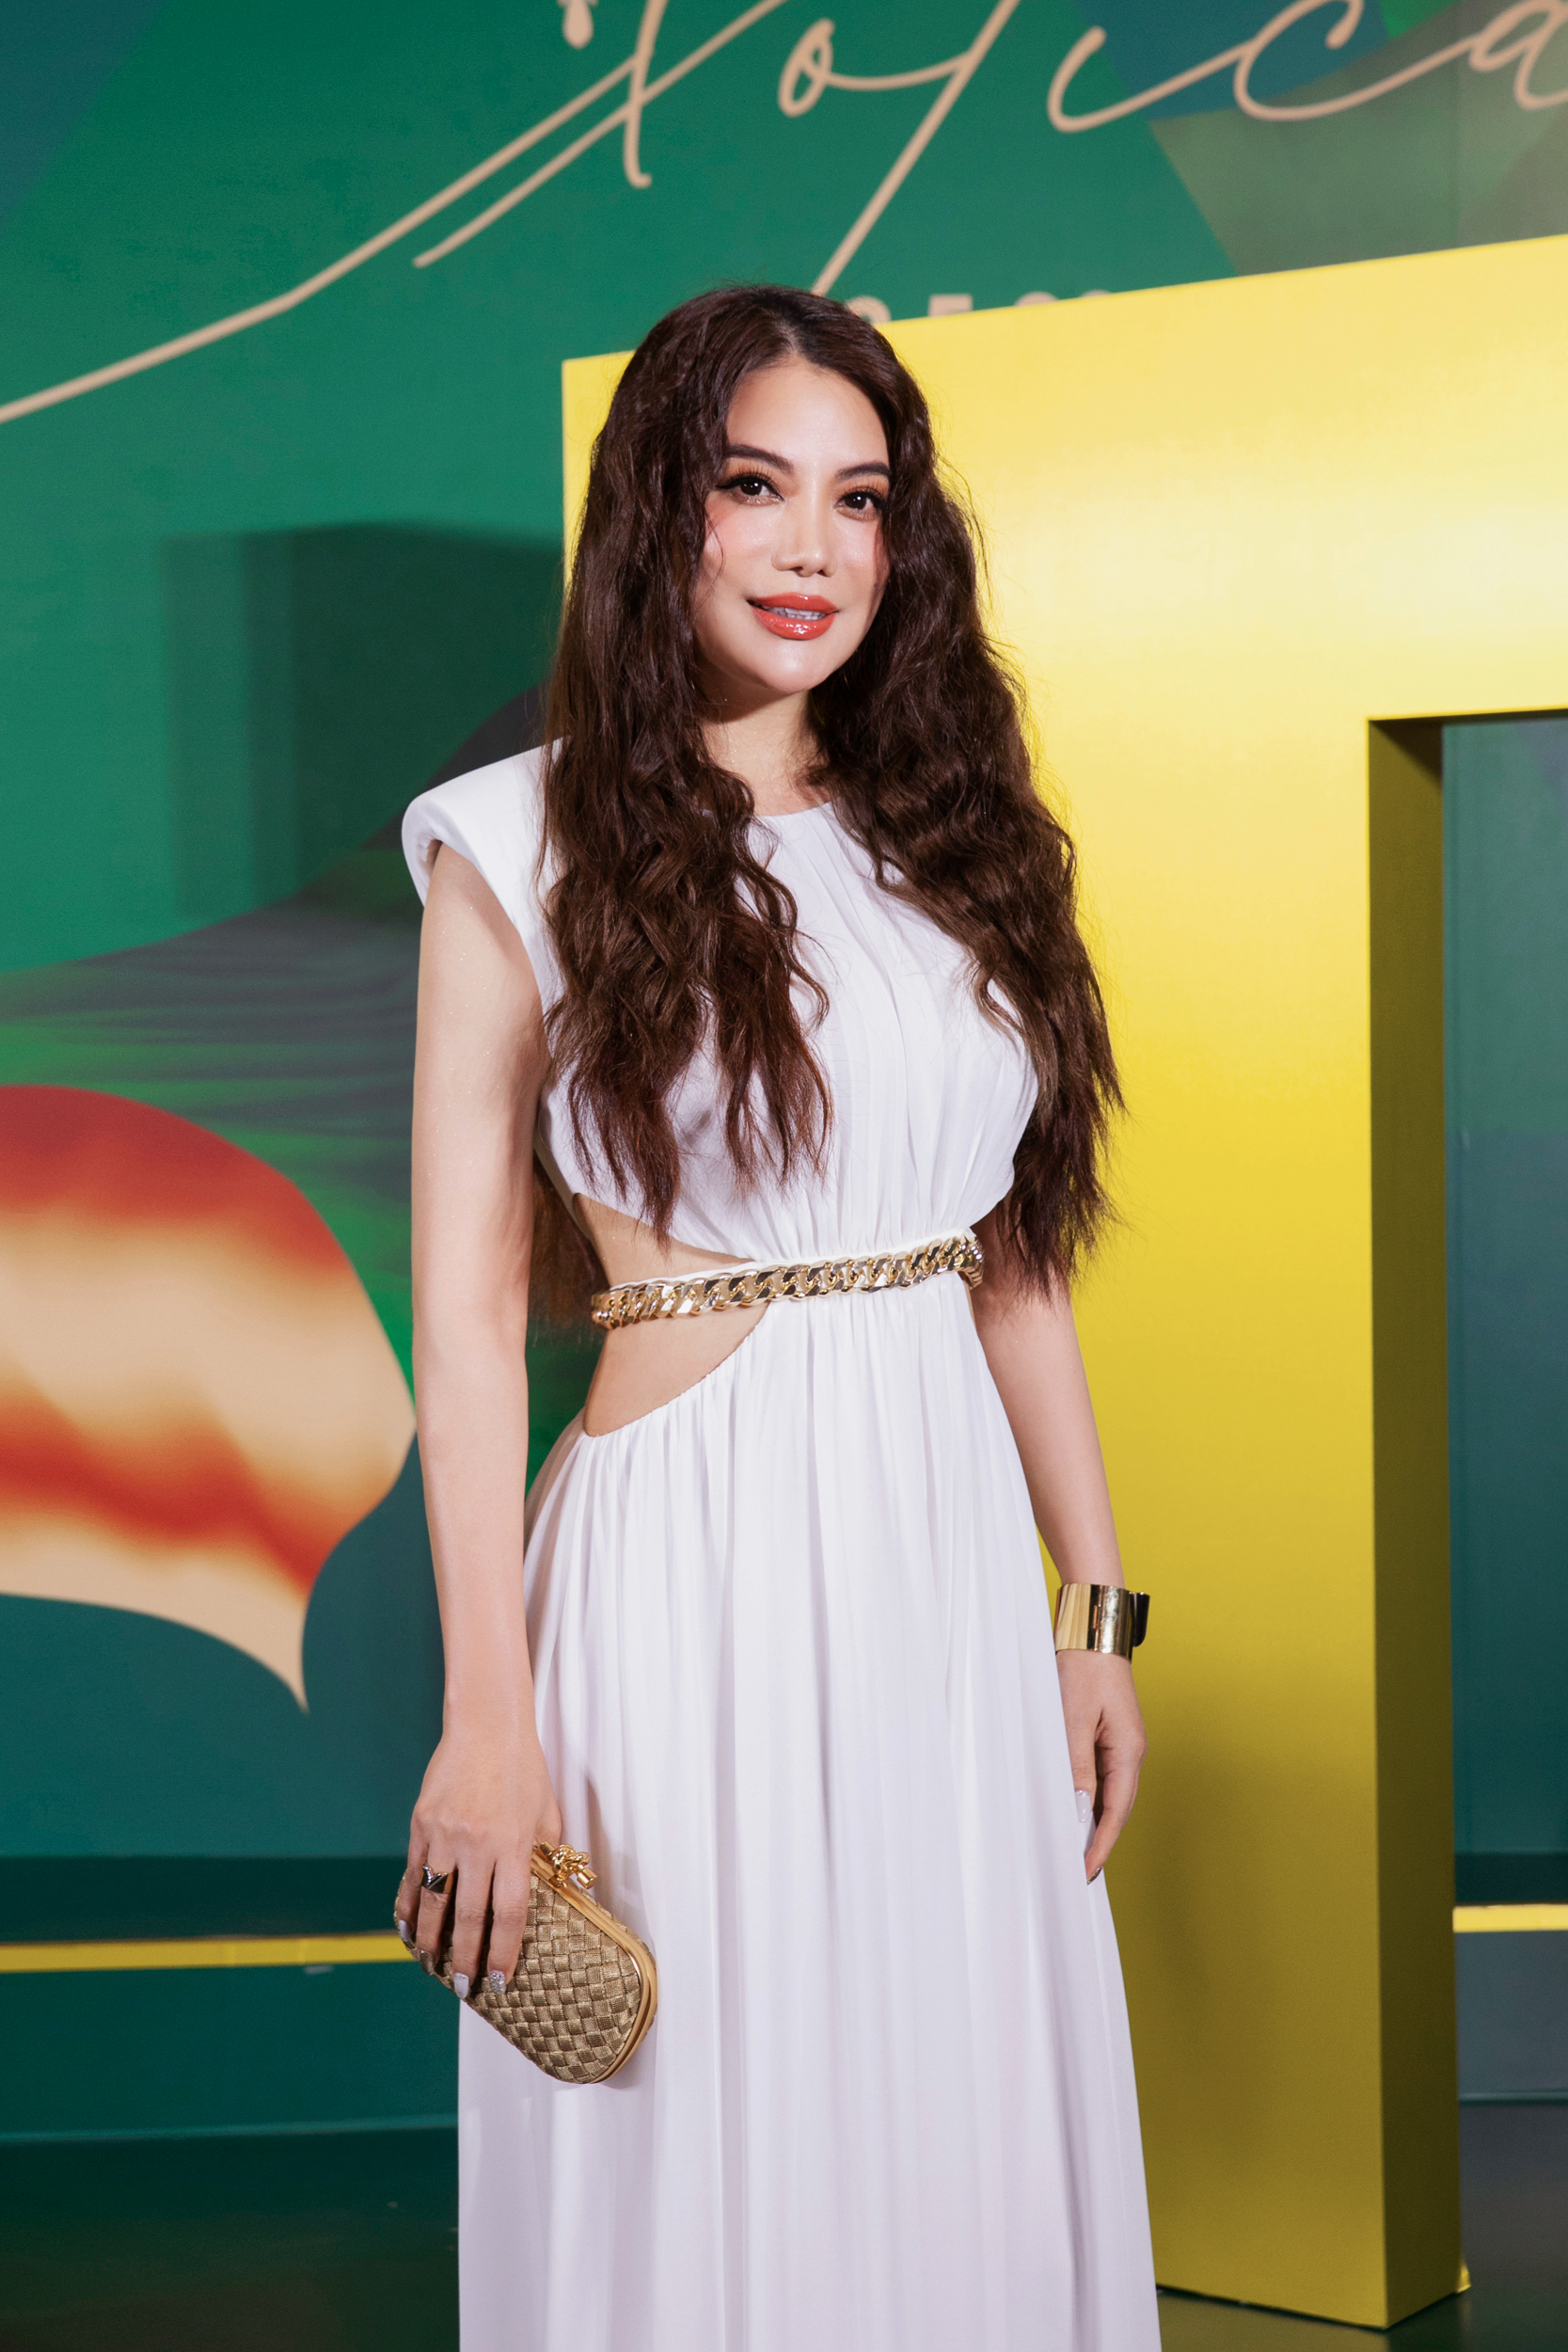 Hoa hậu Kỳ Duyên, Trương Ngọc Ánh khoe dáng nóng bỏng tại sự kiện - Ảnh 5.